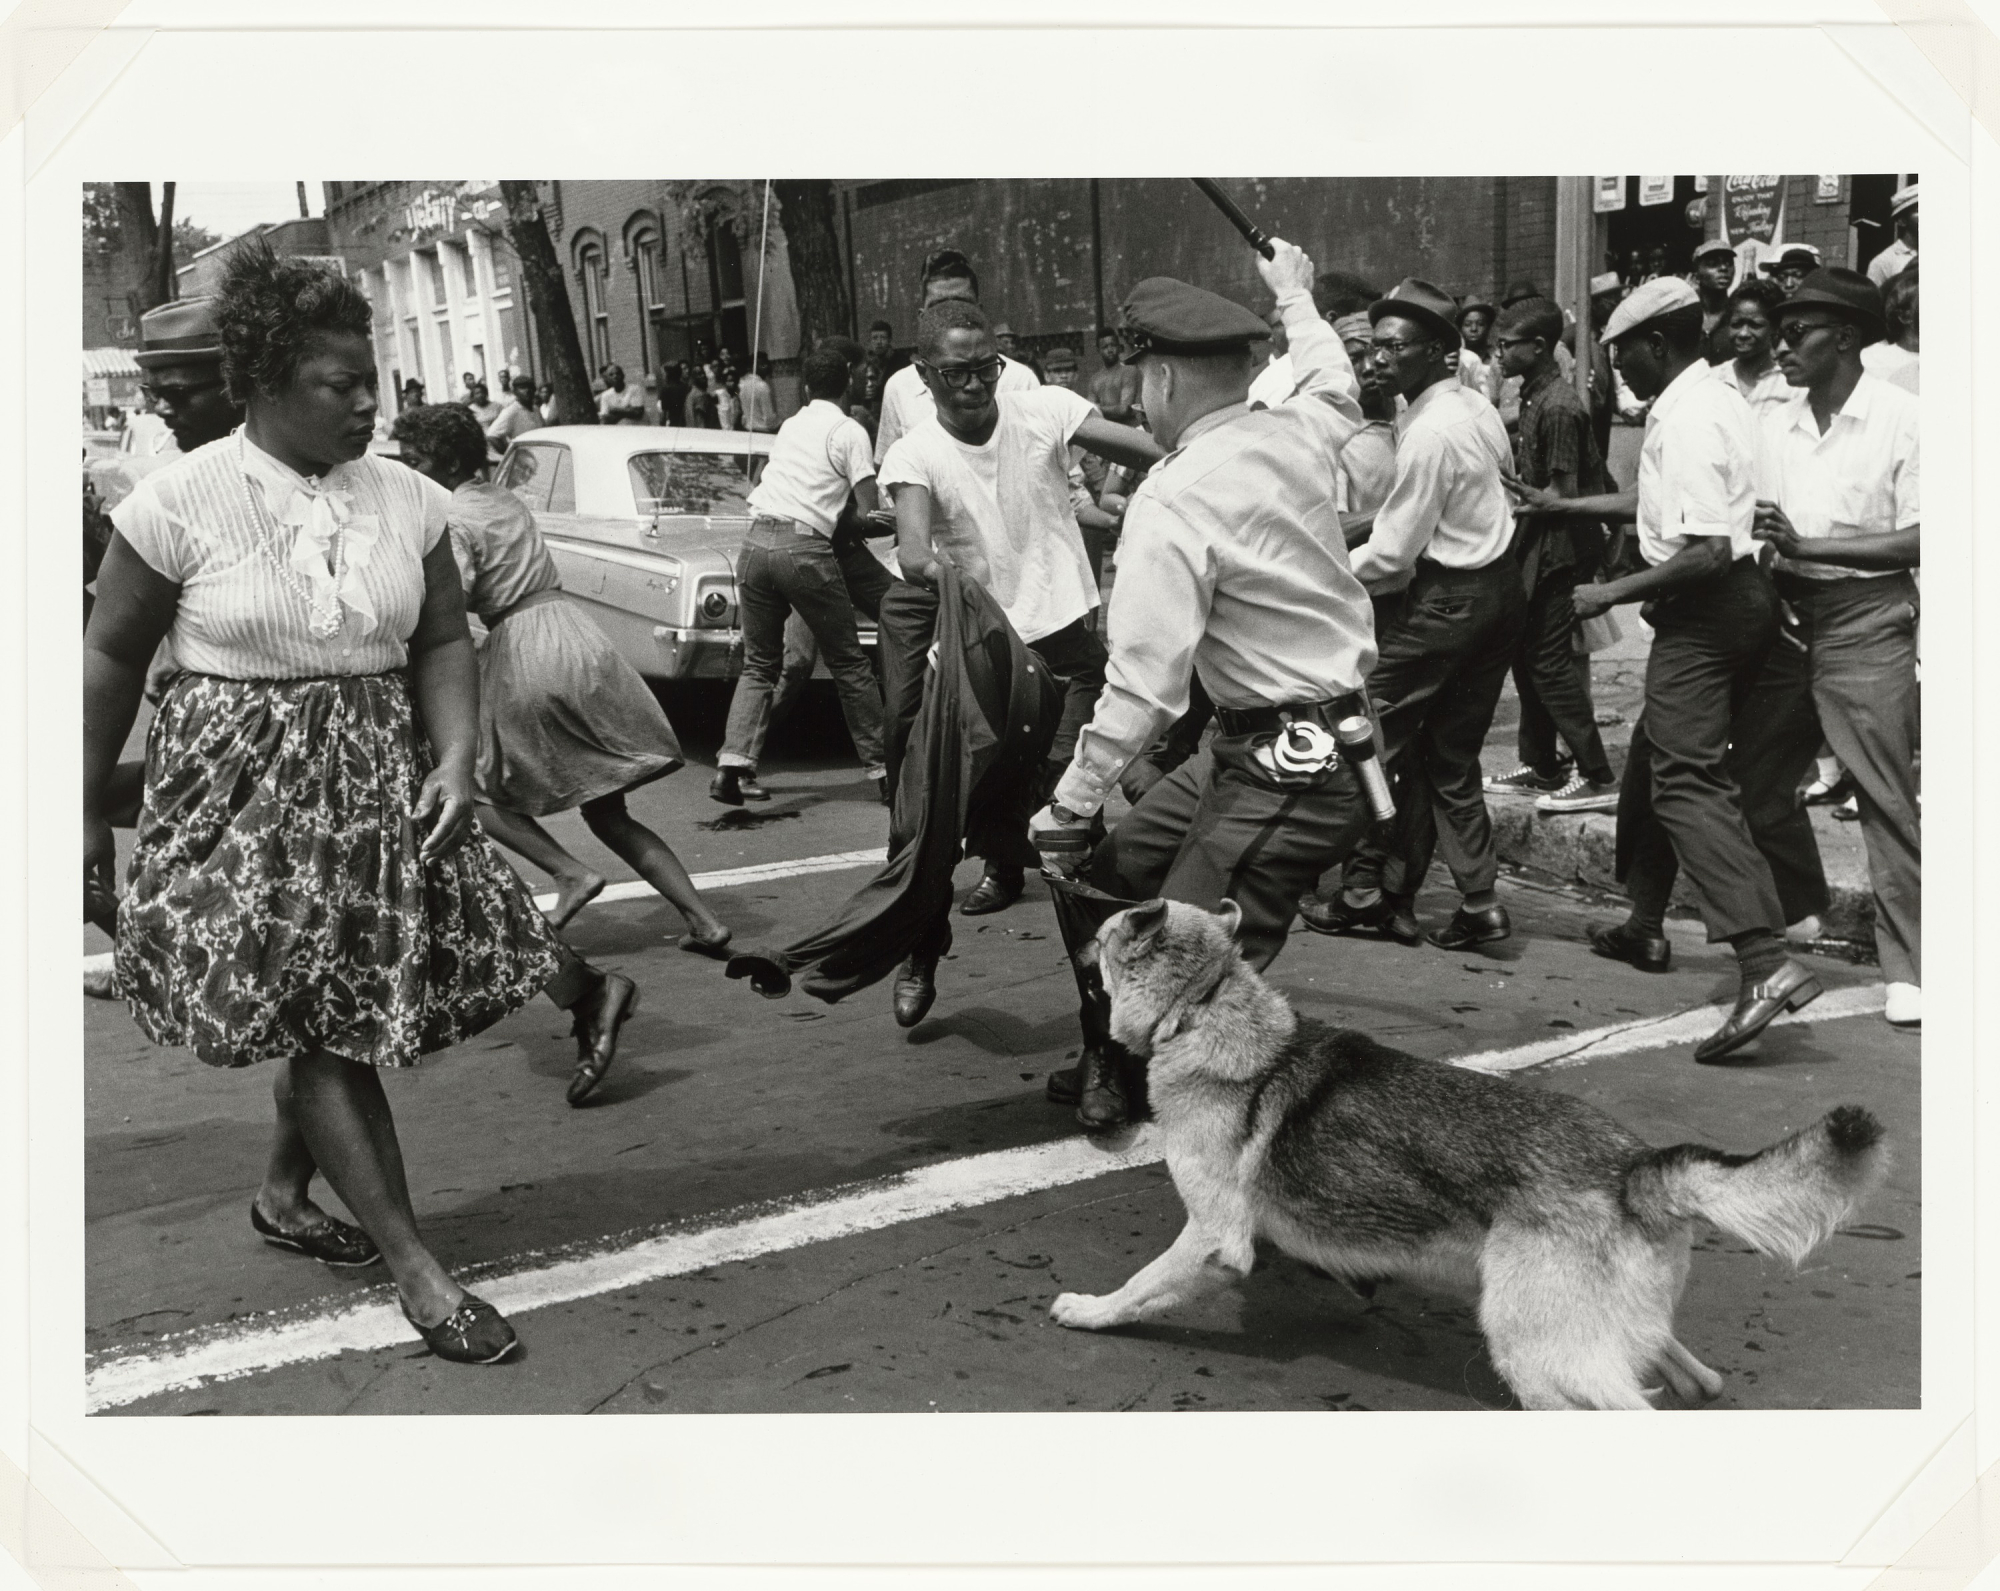 Le 3 mai 1963 - Les événements de Birmingham et leur impact sur la lutte pour les droits civiques aux États-Unis